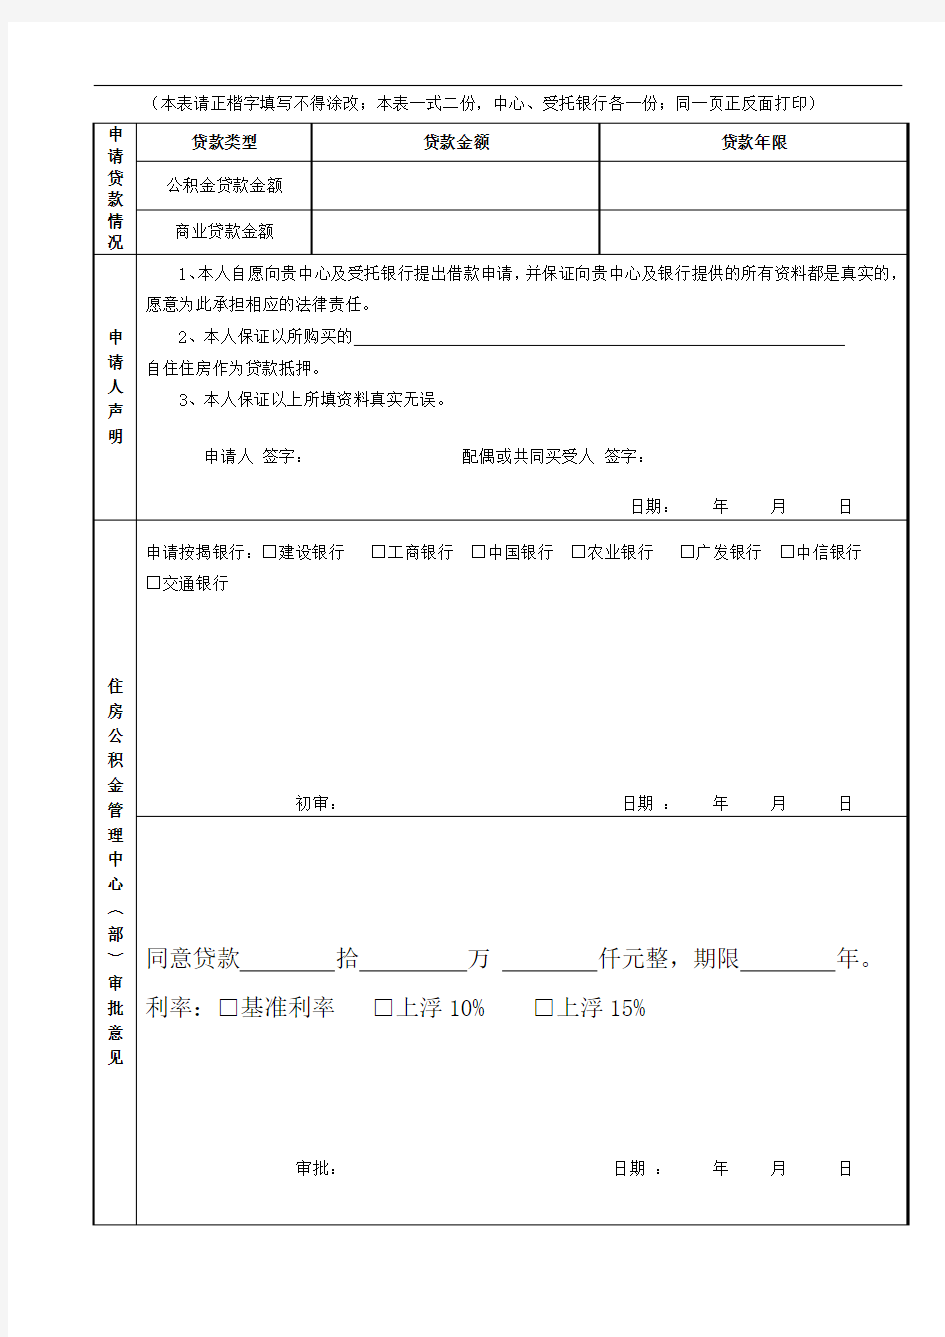 惠州市住房公积金个人住房贷款申请审批表、征信查询表、收入证明